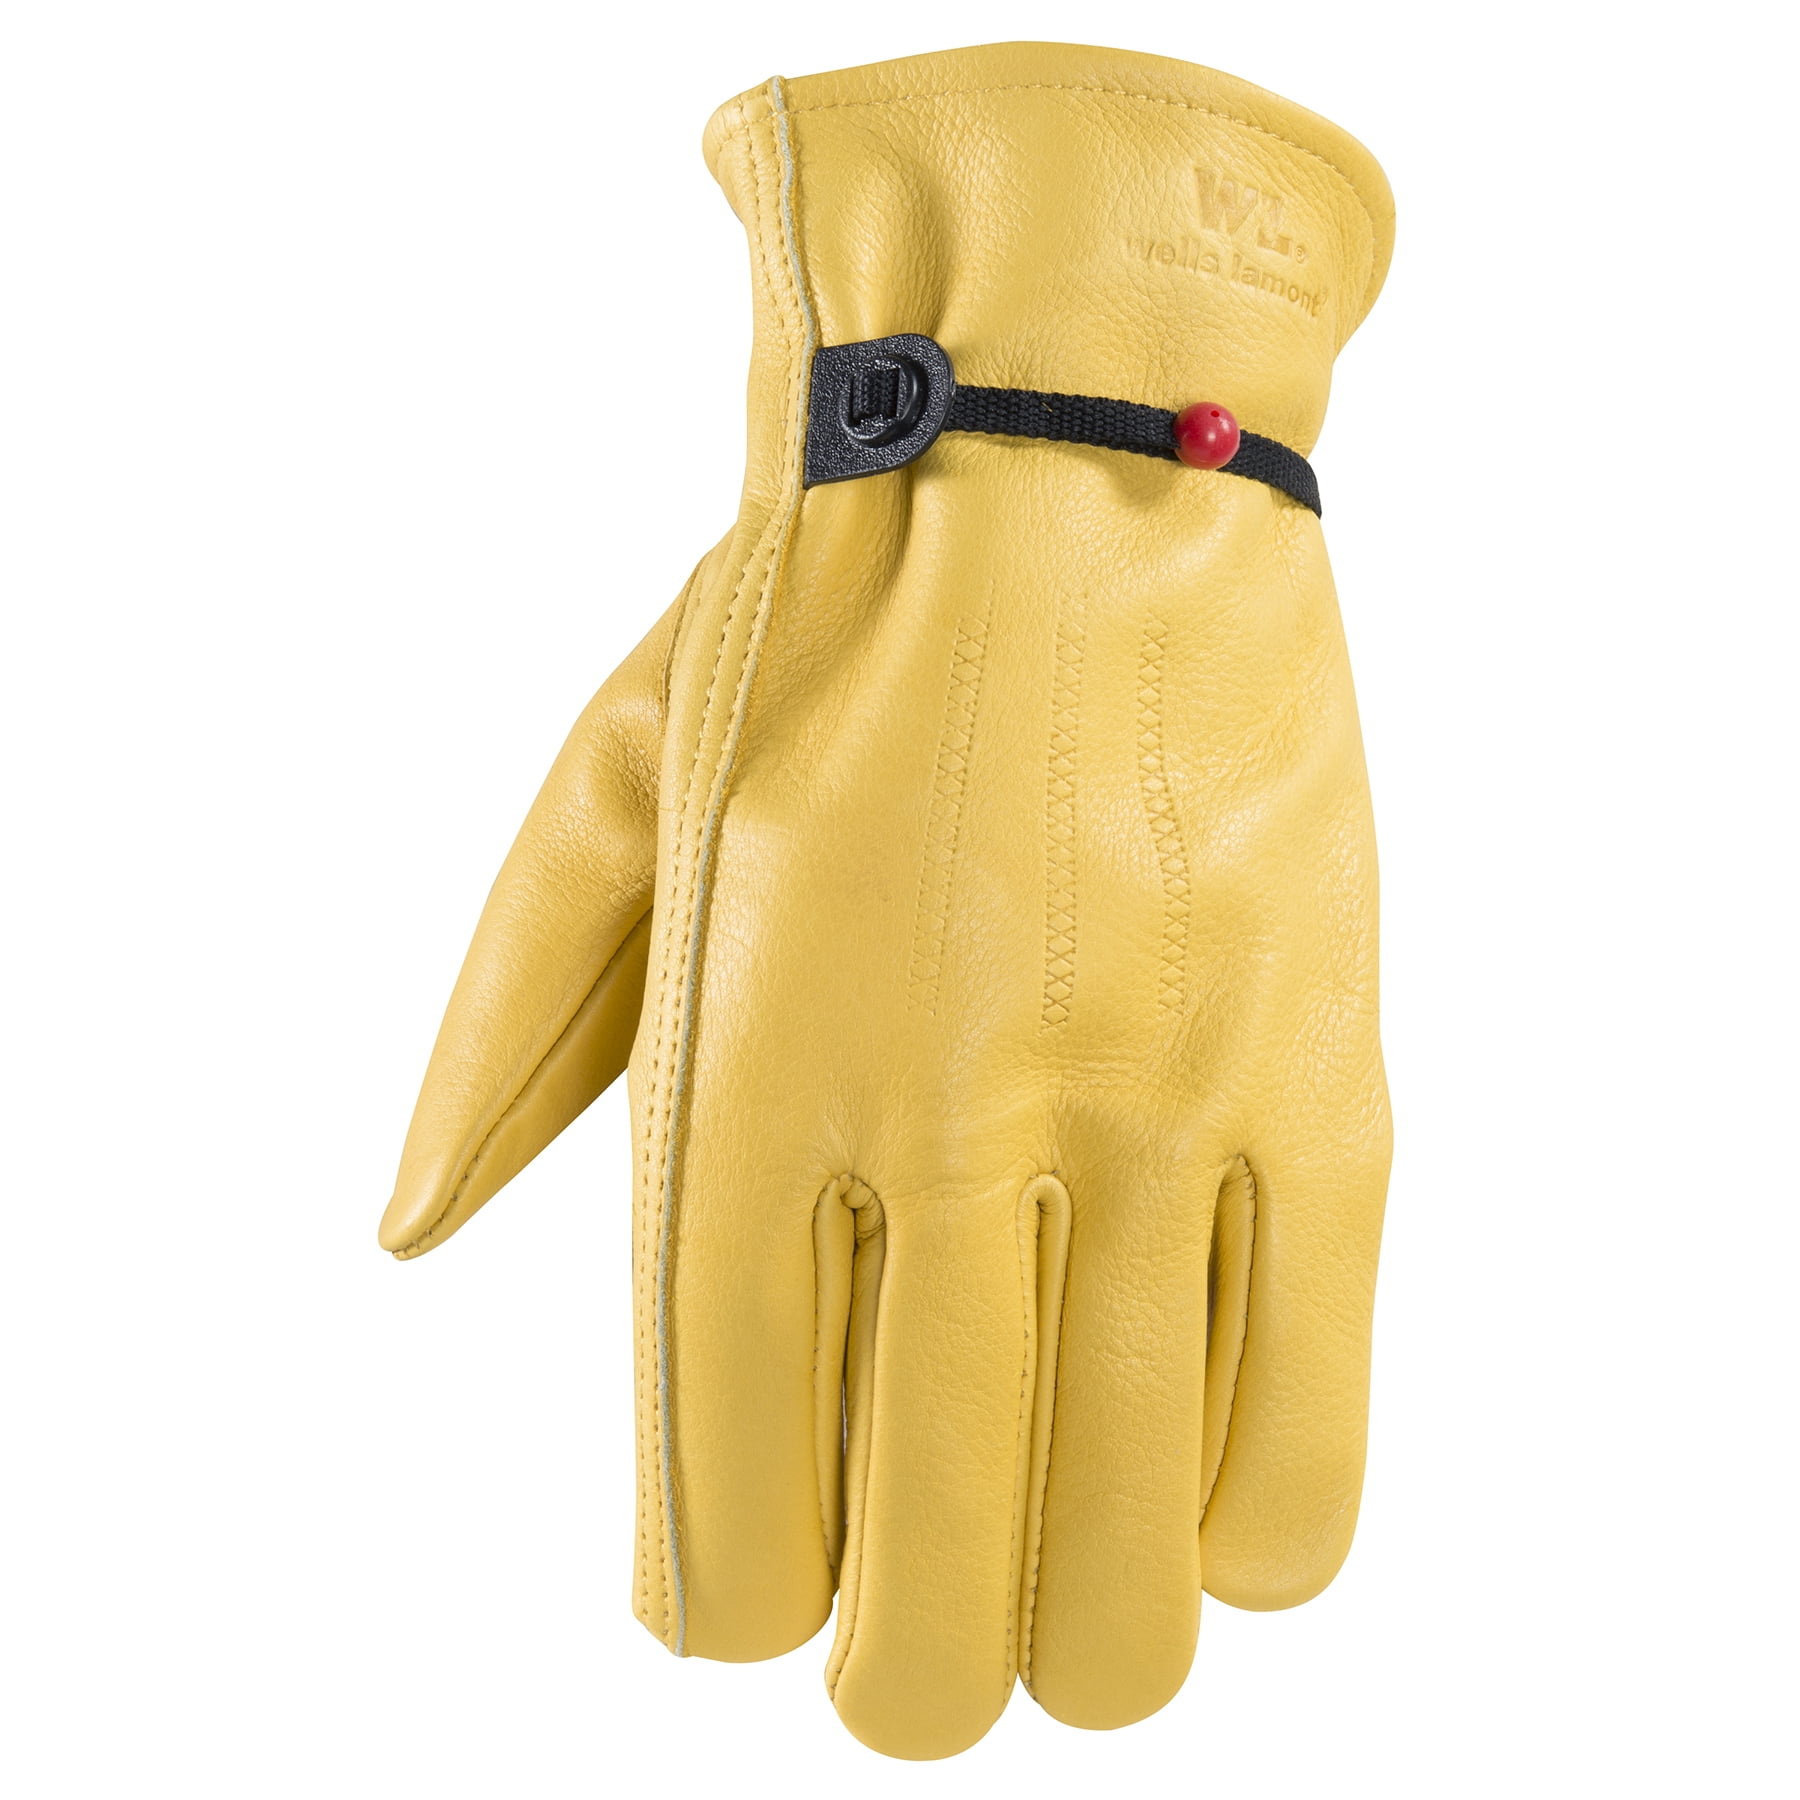 Accessories Gloves & Mittens Gardening & Work Gloves Yard Work Gloves for Men 